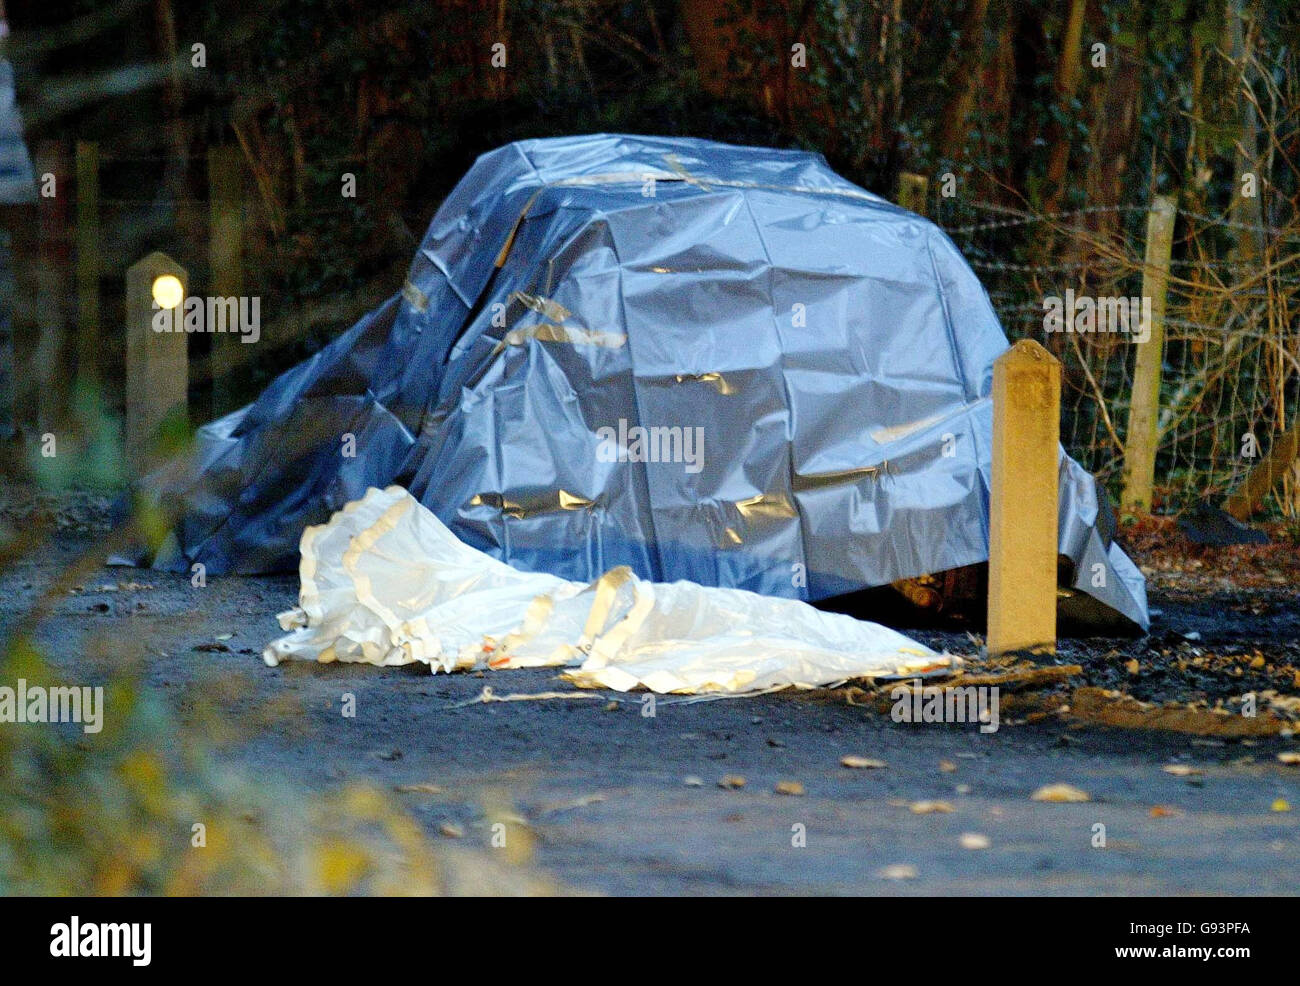 Une feuille de plastique couvre jeudi 26 janvier 2006, la voiture brûlée d'un couple qui a été trouvé mort à leur domicile à Faversham mercredi. Voir PA Story corps POLICIERS. APPUYEZ SUR ASSOCIATION photo. Le crédit photo devrait se lire: Gareth Fulller. Banque D'Images